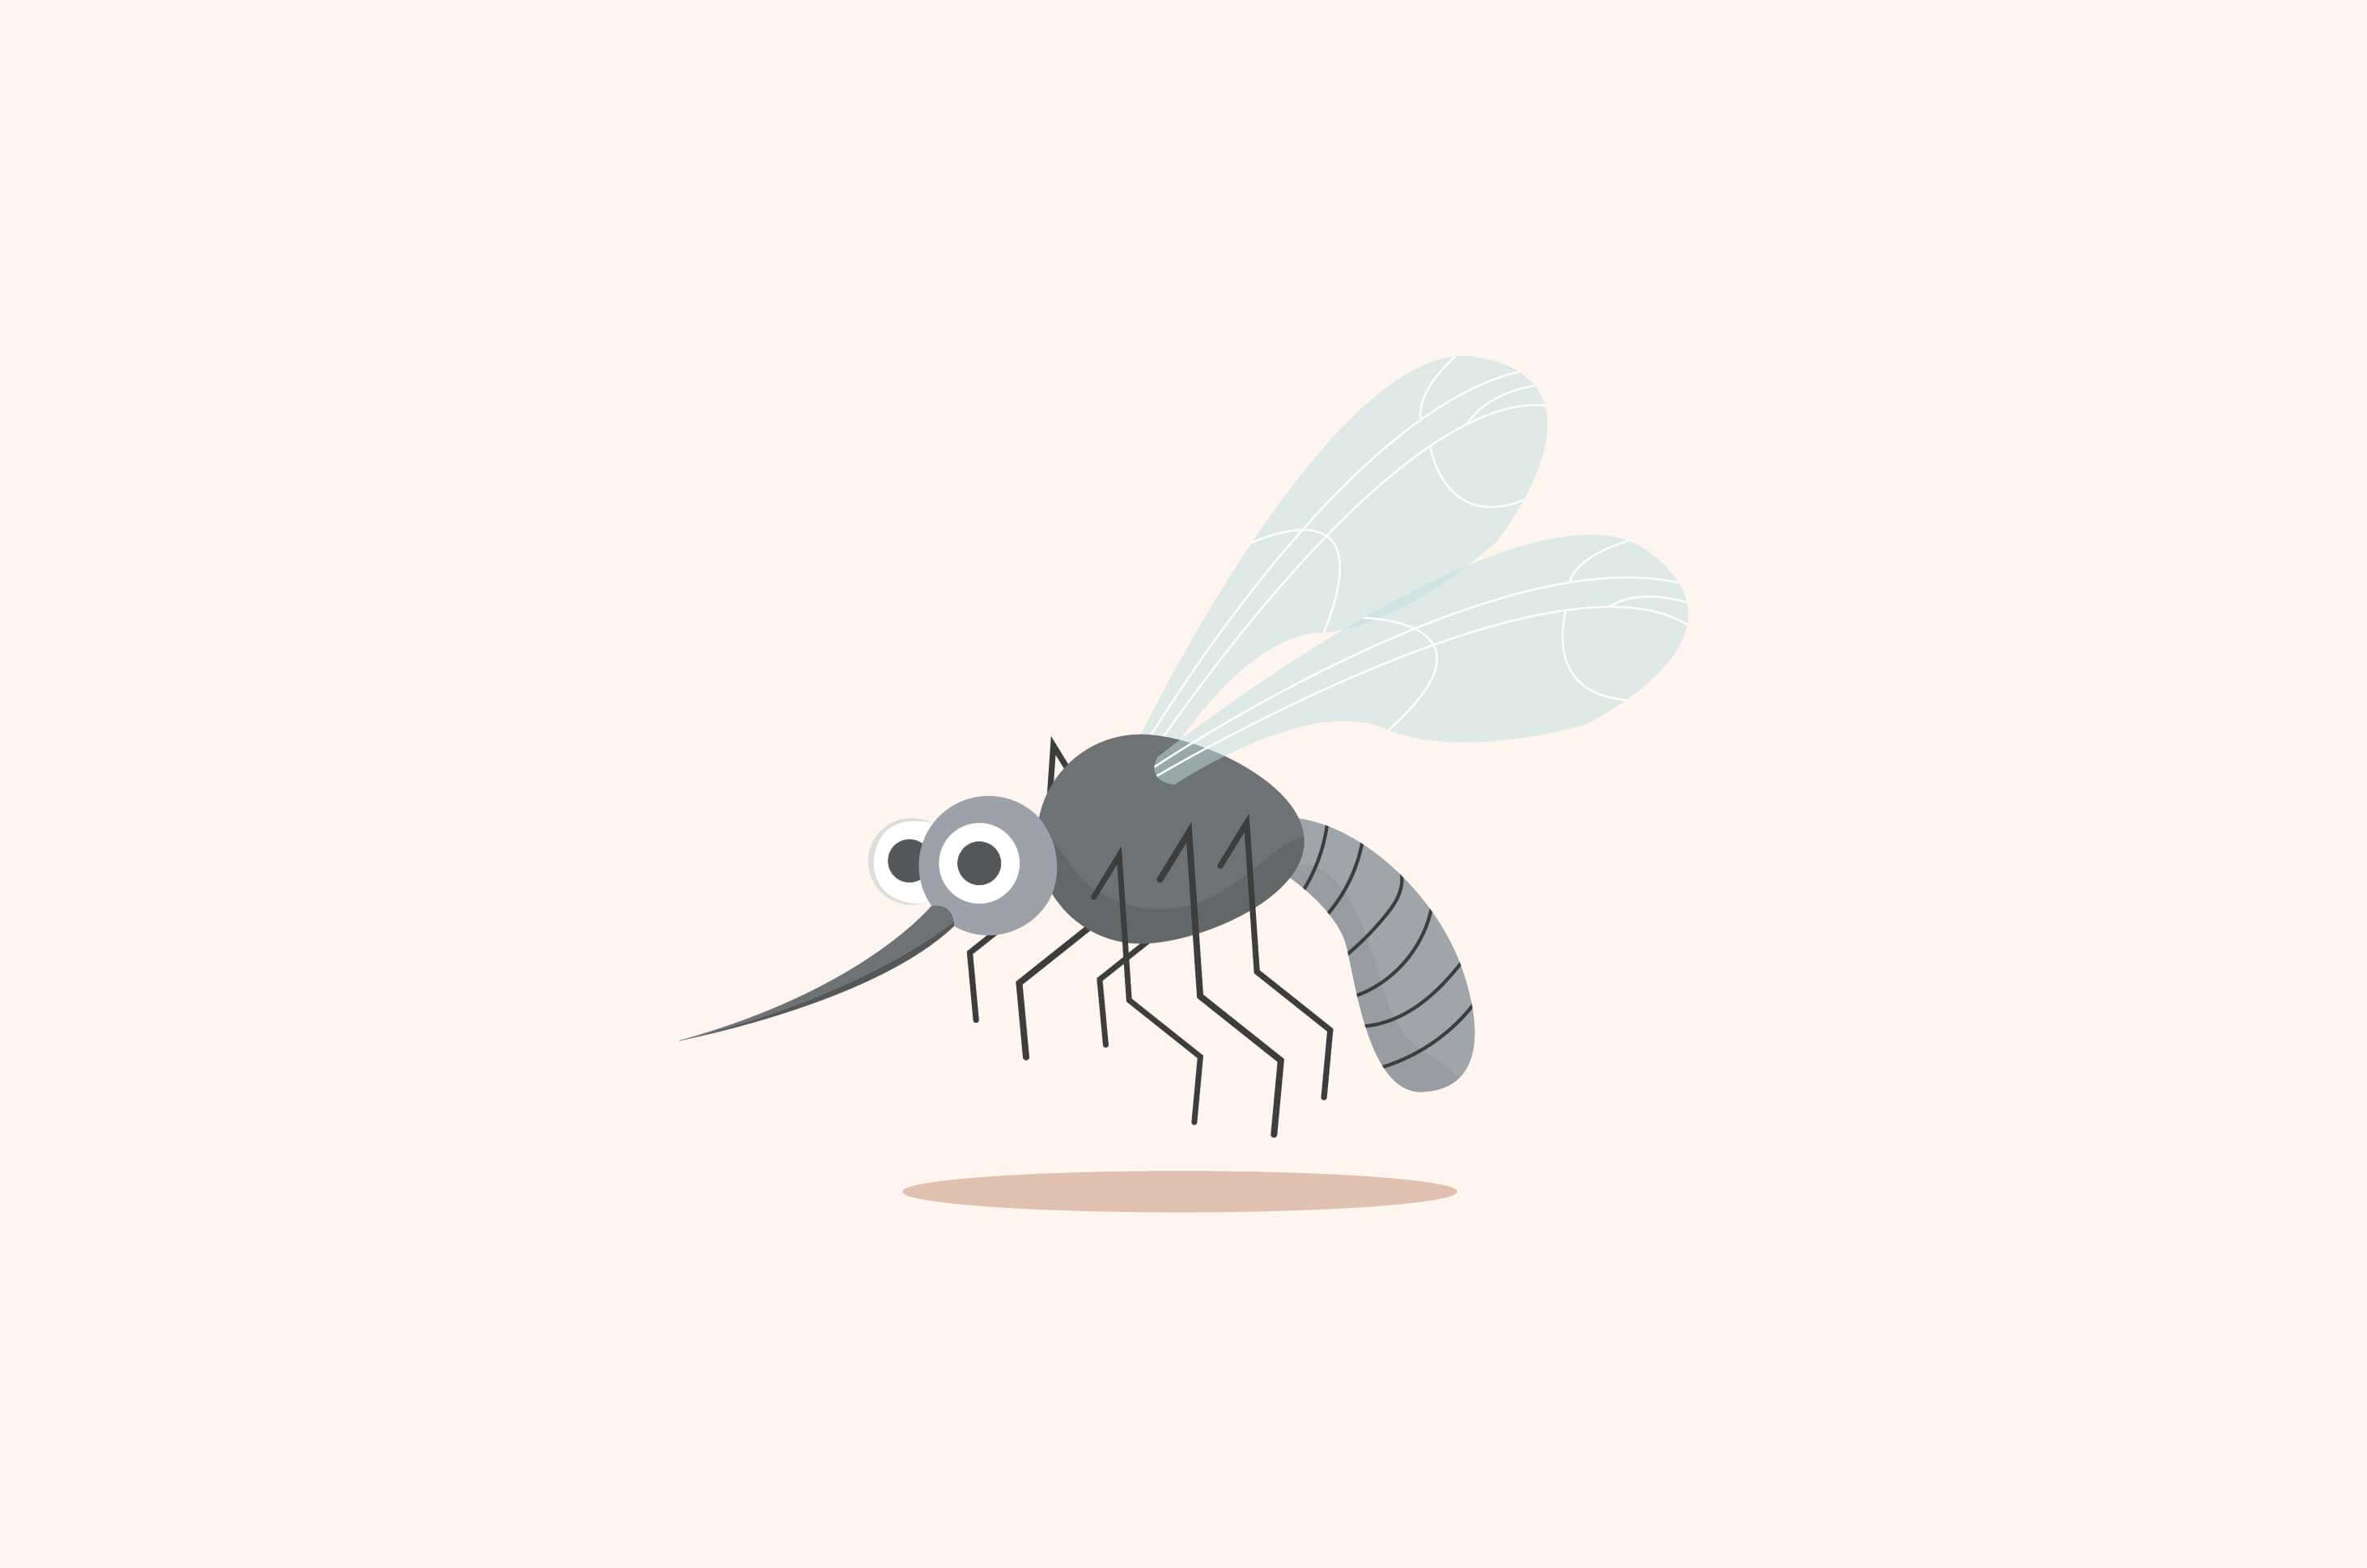 להלן עקיצות חרקים שכדאי להיזהר מהן